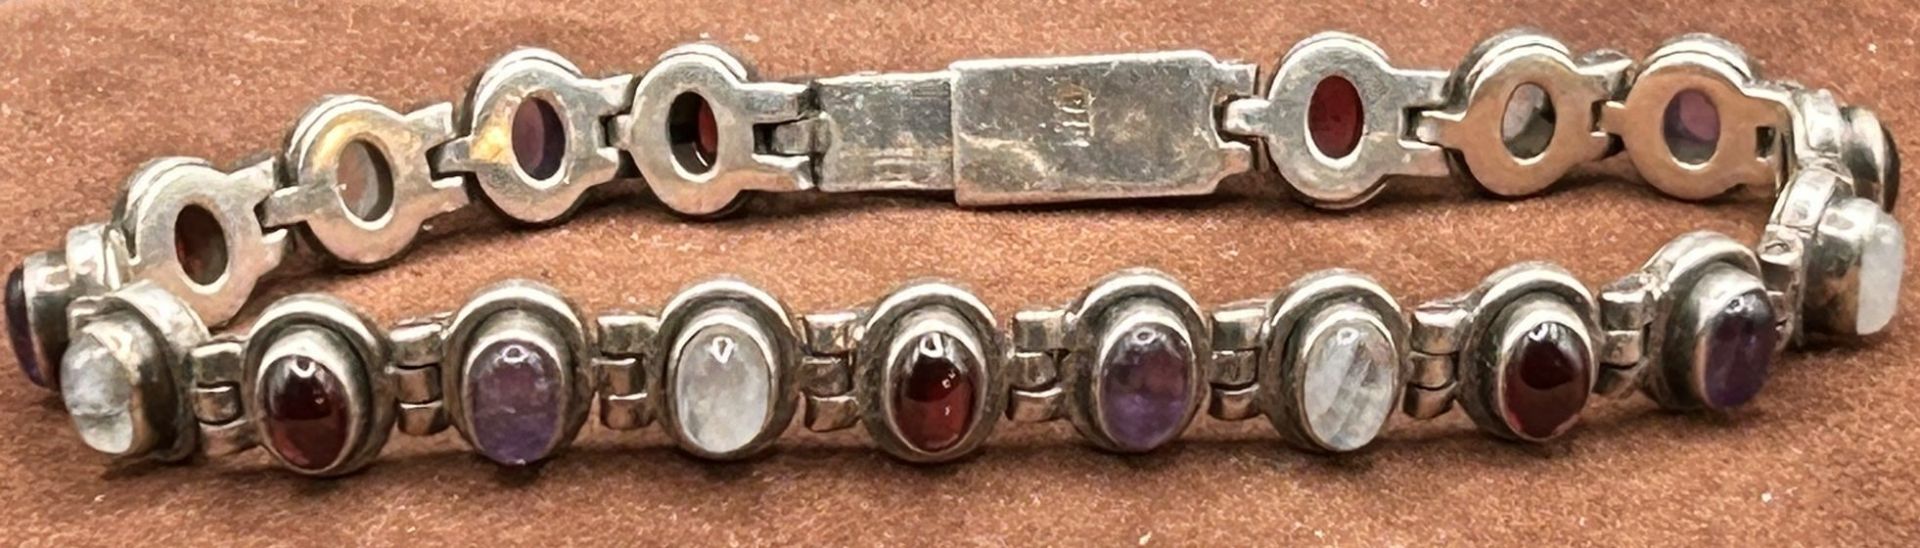 Silber-925- Armband mit Mondstein, Amethyste, Granate, L-19 cm, 26,9 cm